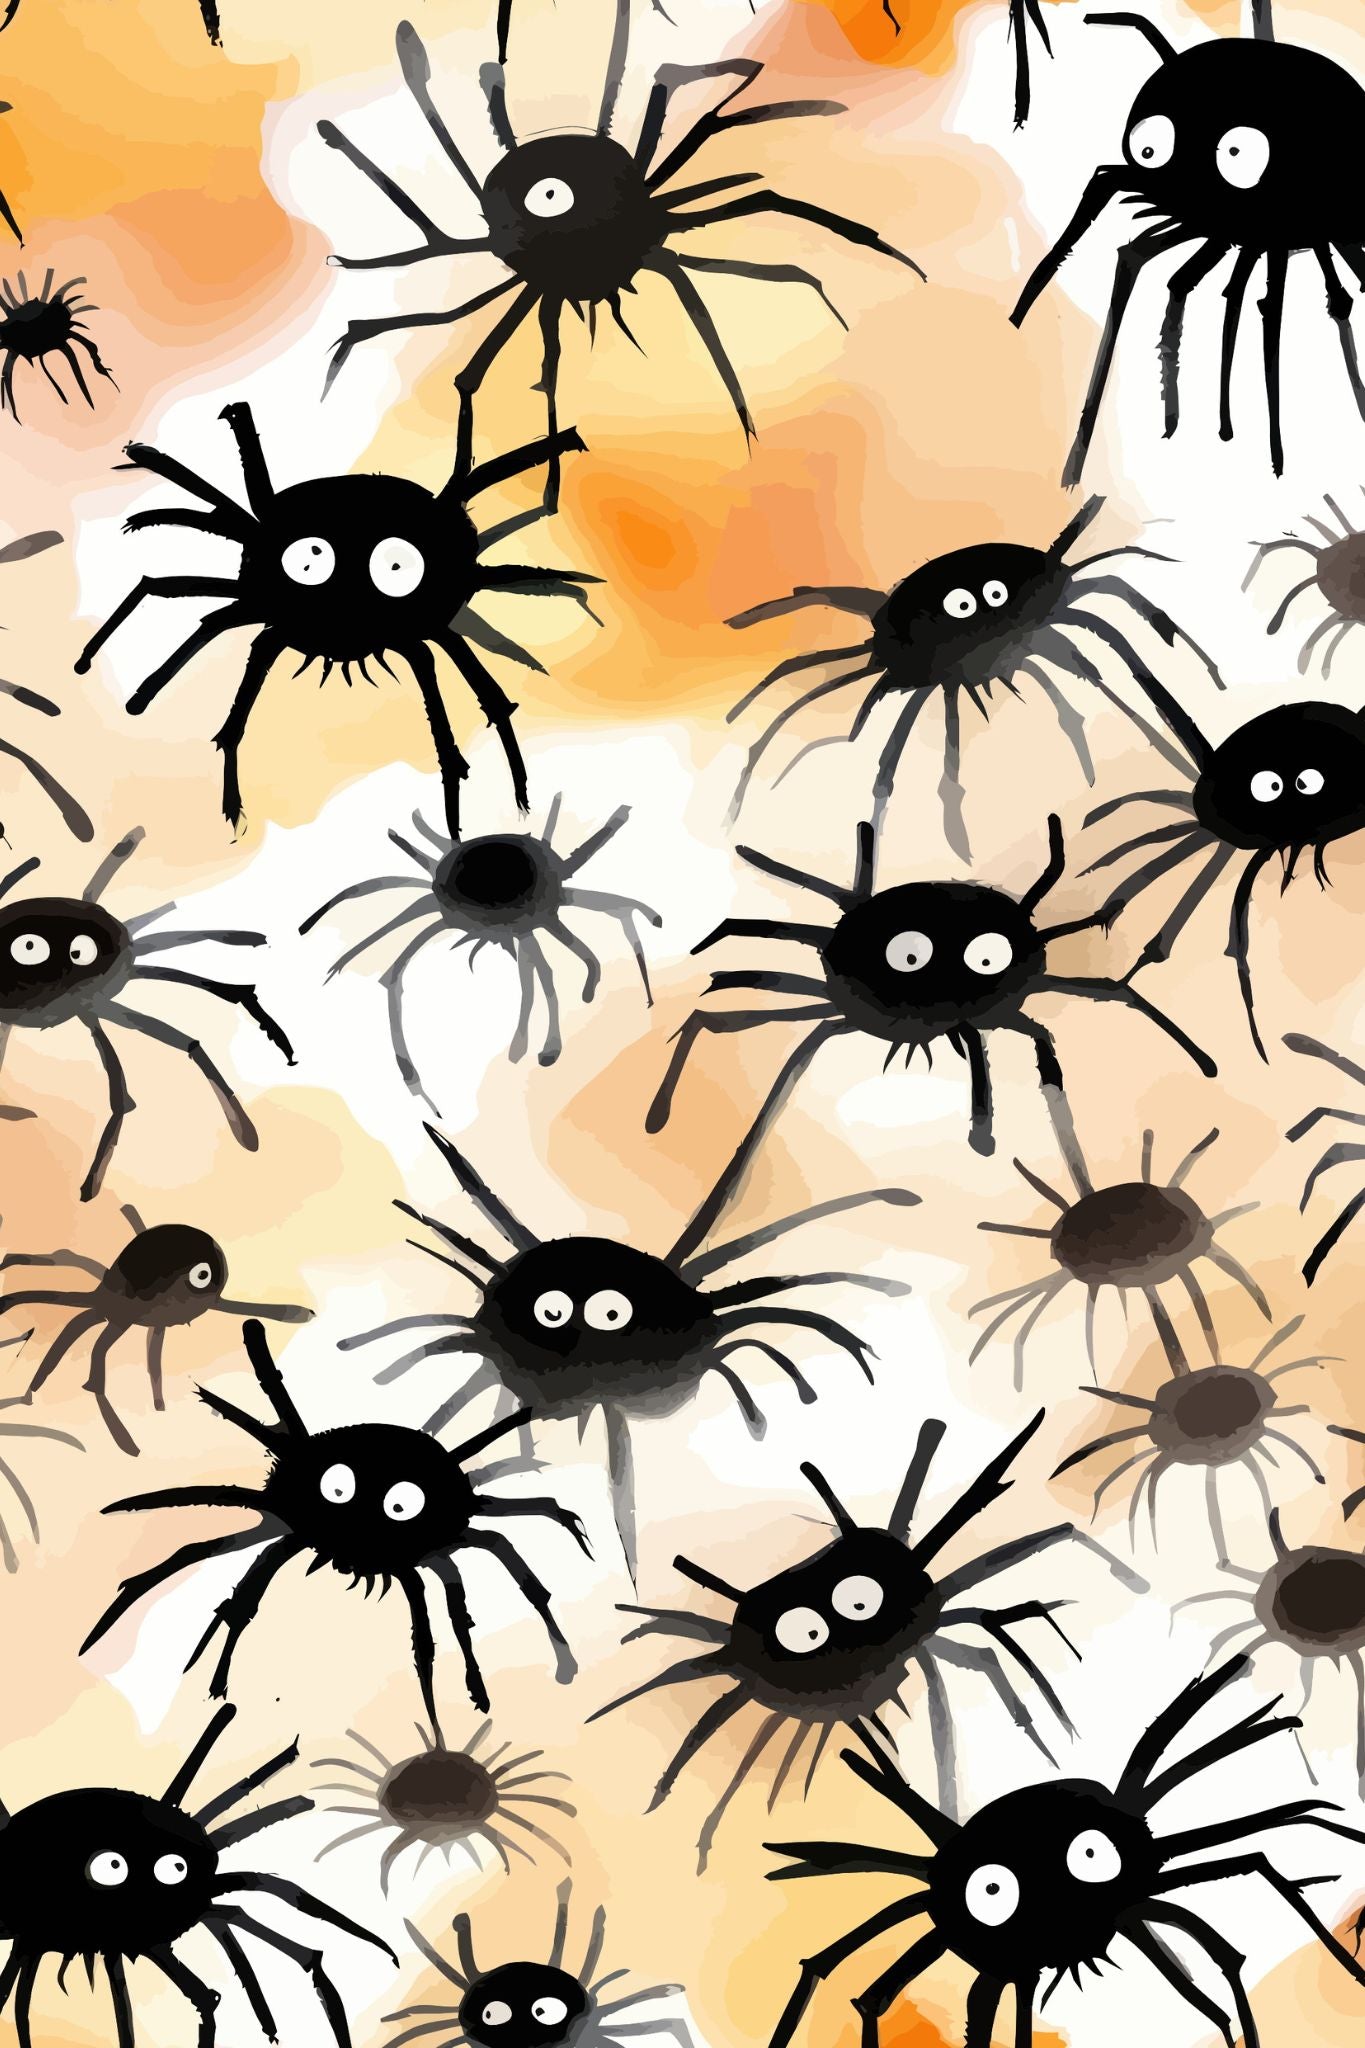 Creepy og kult halloweenkort. Motiv er i cartoon og forestiller mange edderkopper